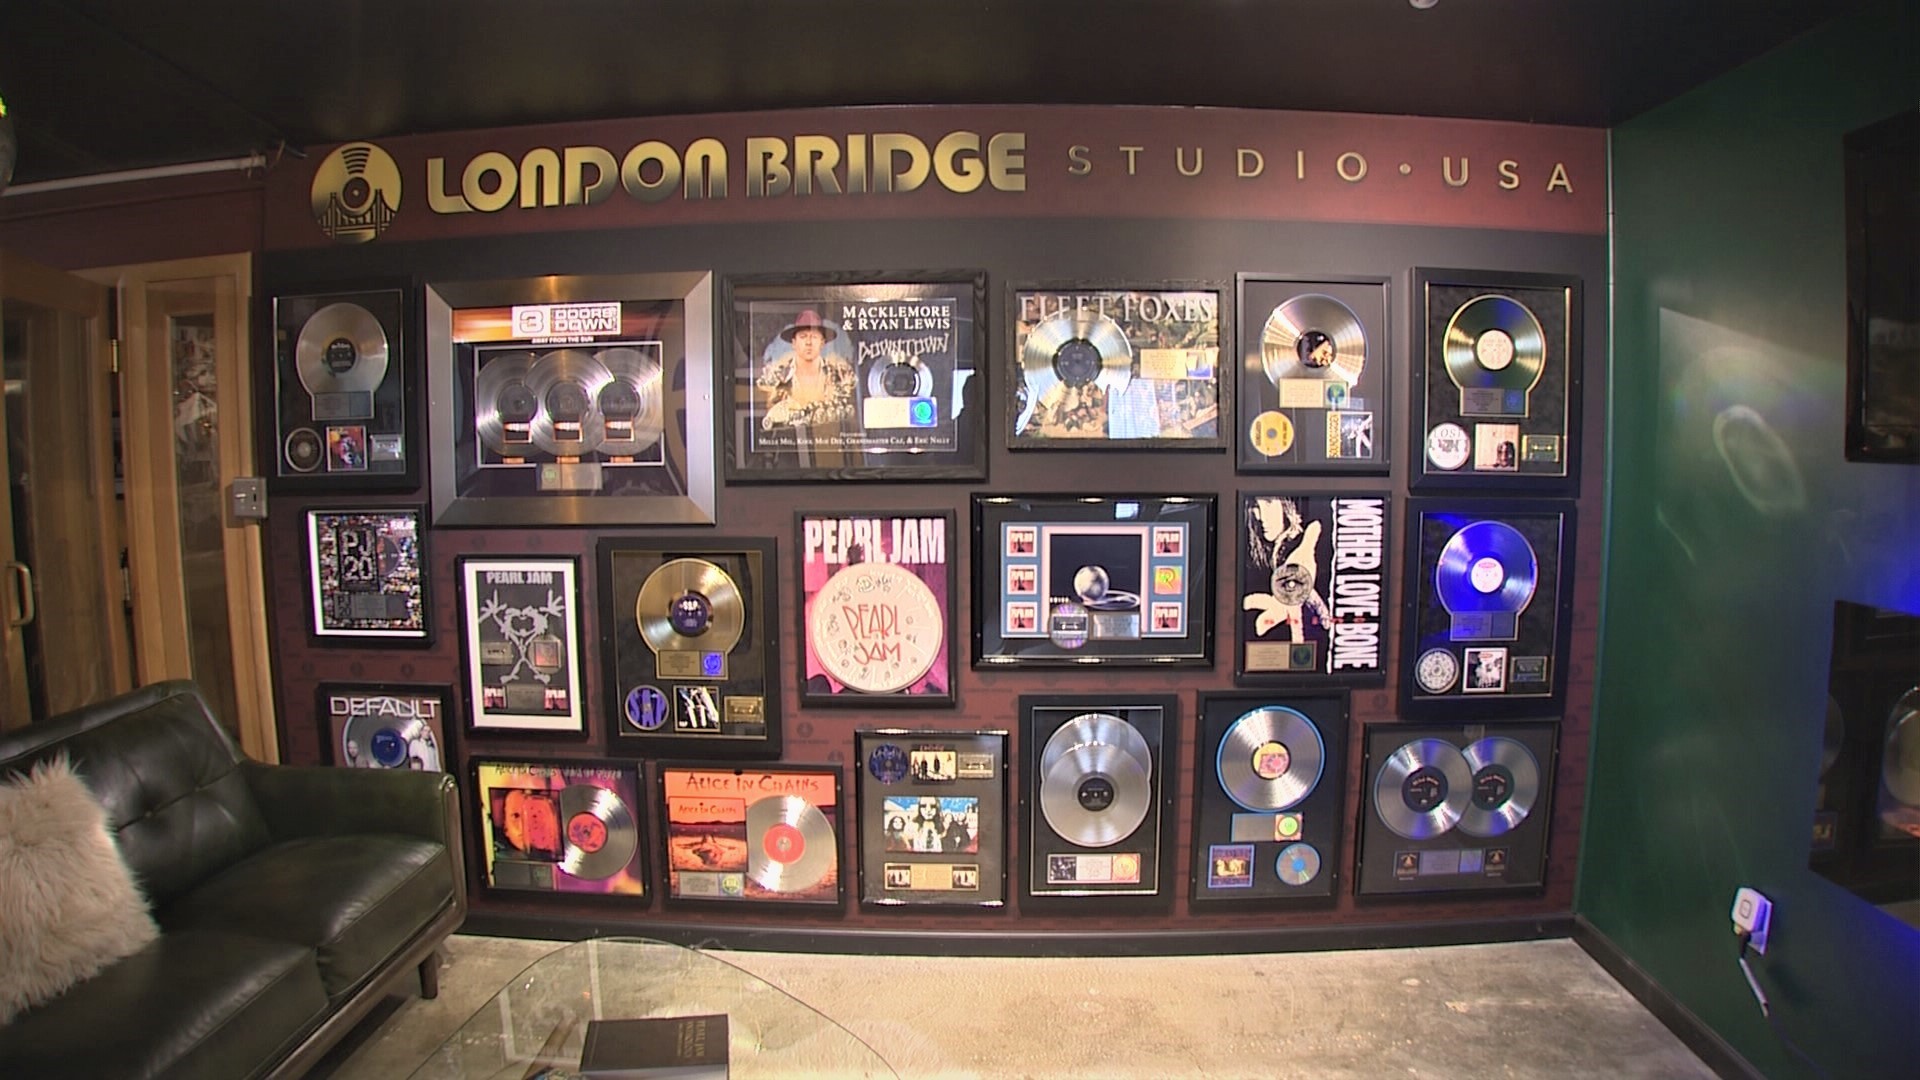 London Bridge Studio now offers historic tours for fans